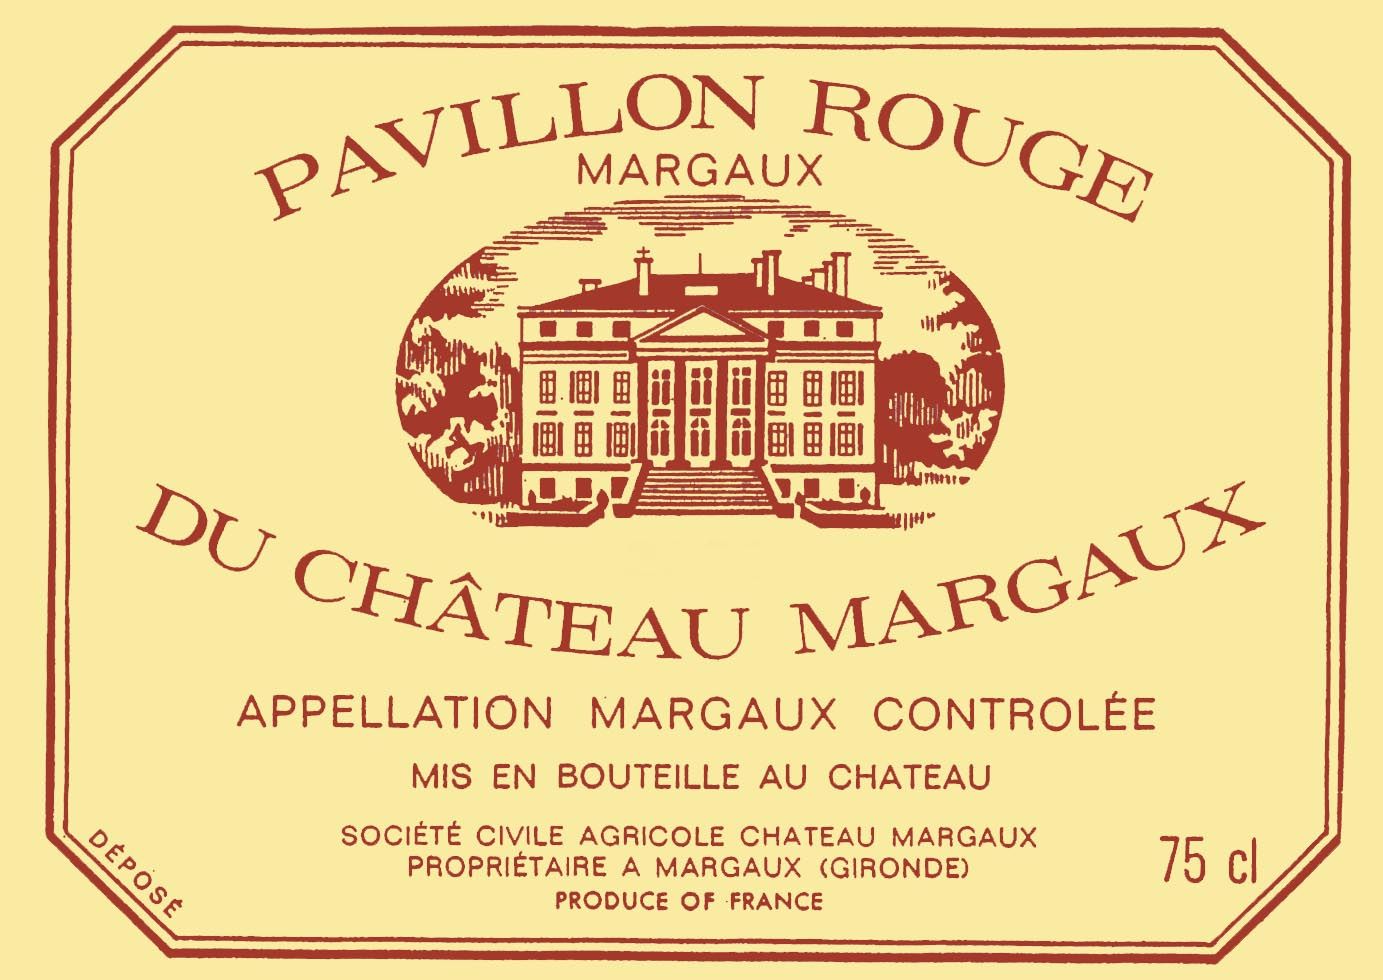 Pavillon Rouge Du Chateau Margaux label